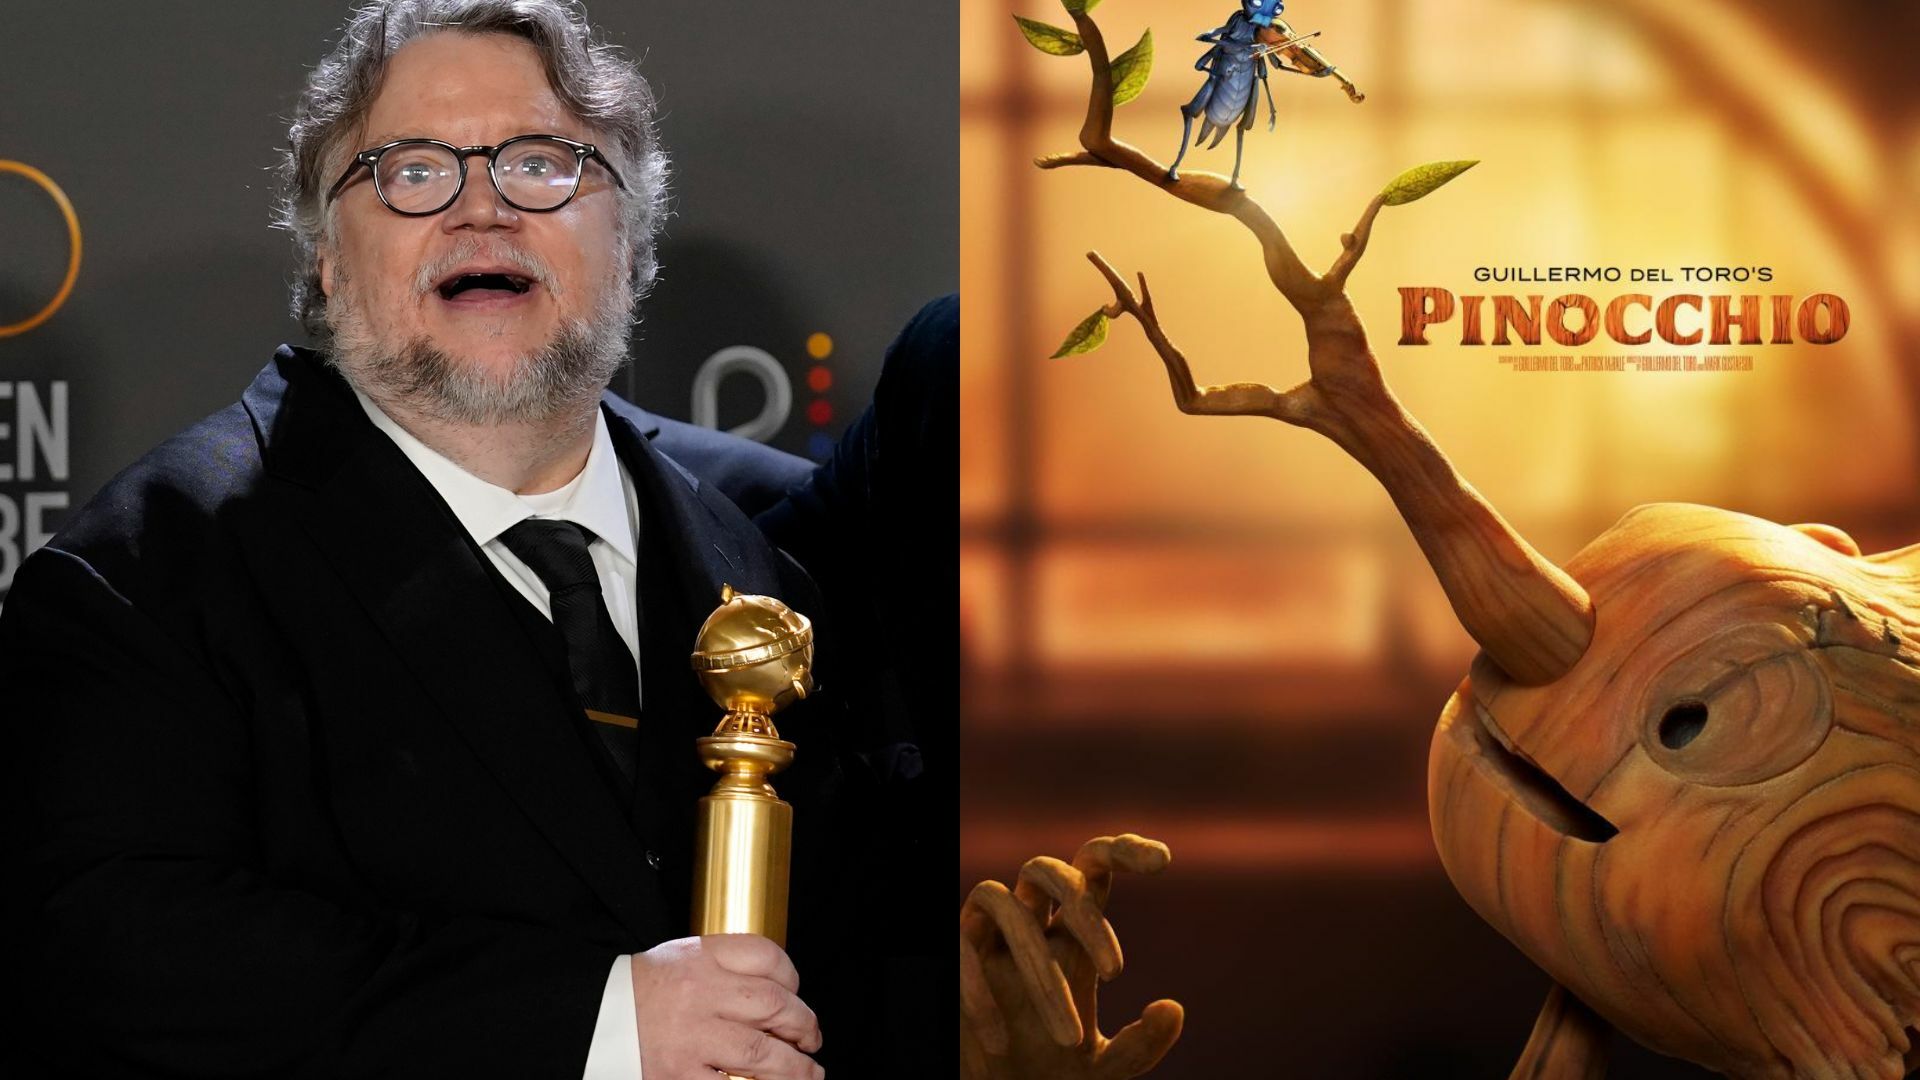 ¡Orgullo mexicano! Pinocho de Guillermo del Toro gana el Golden Globe a Mejor película animada